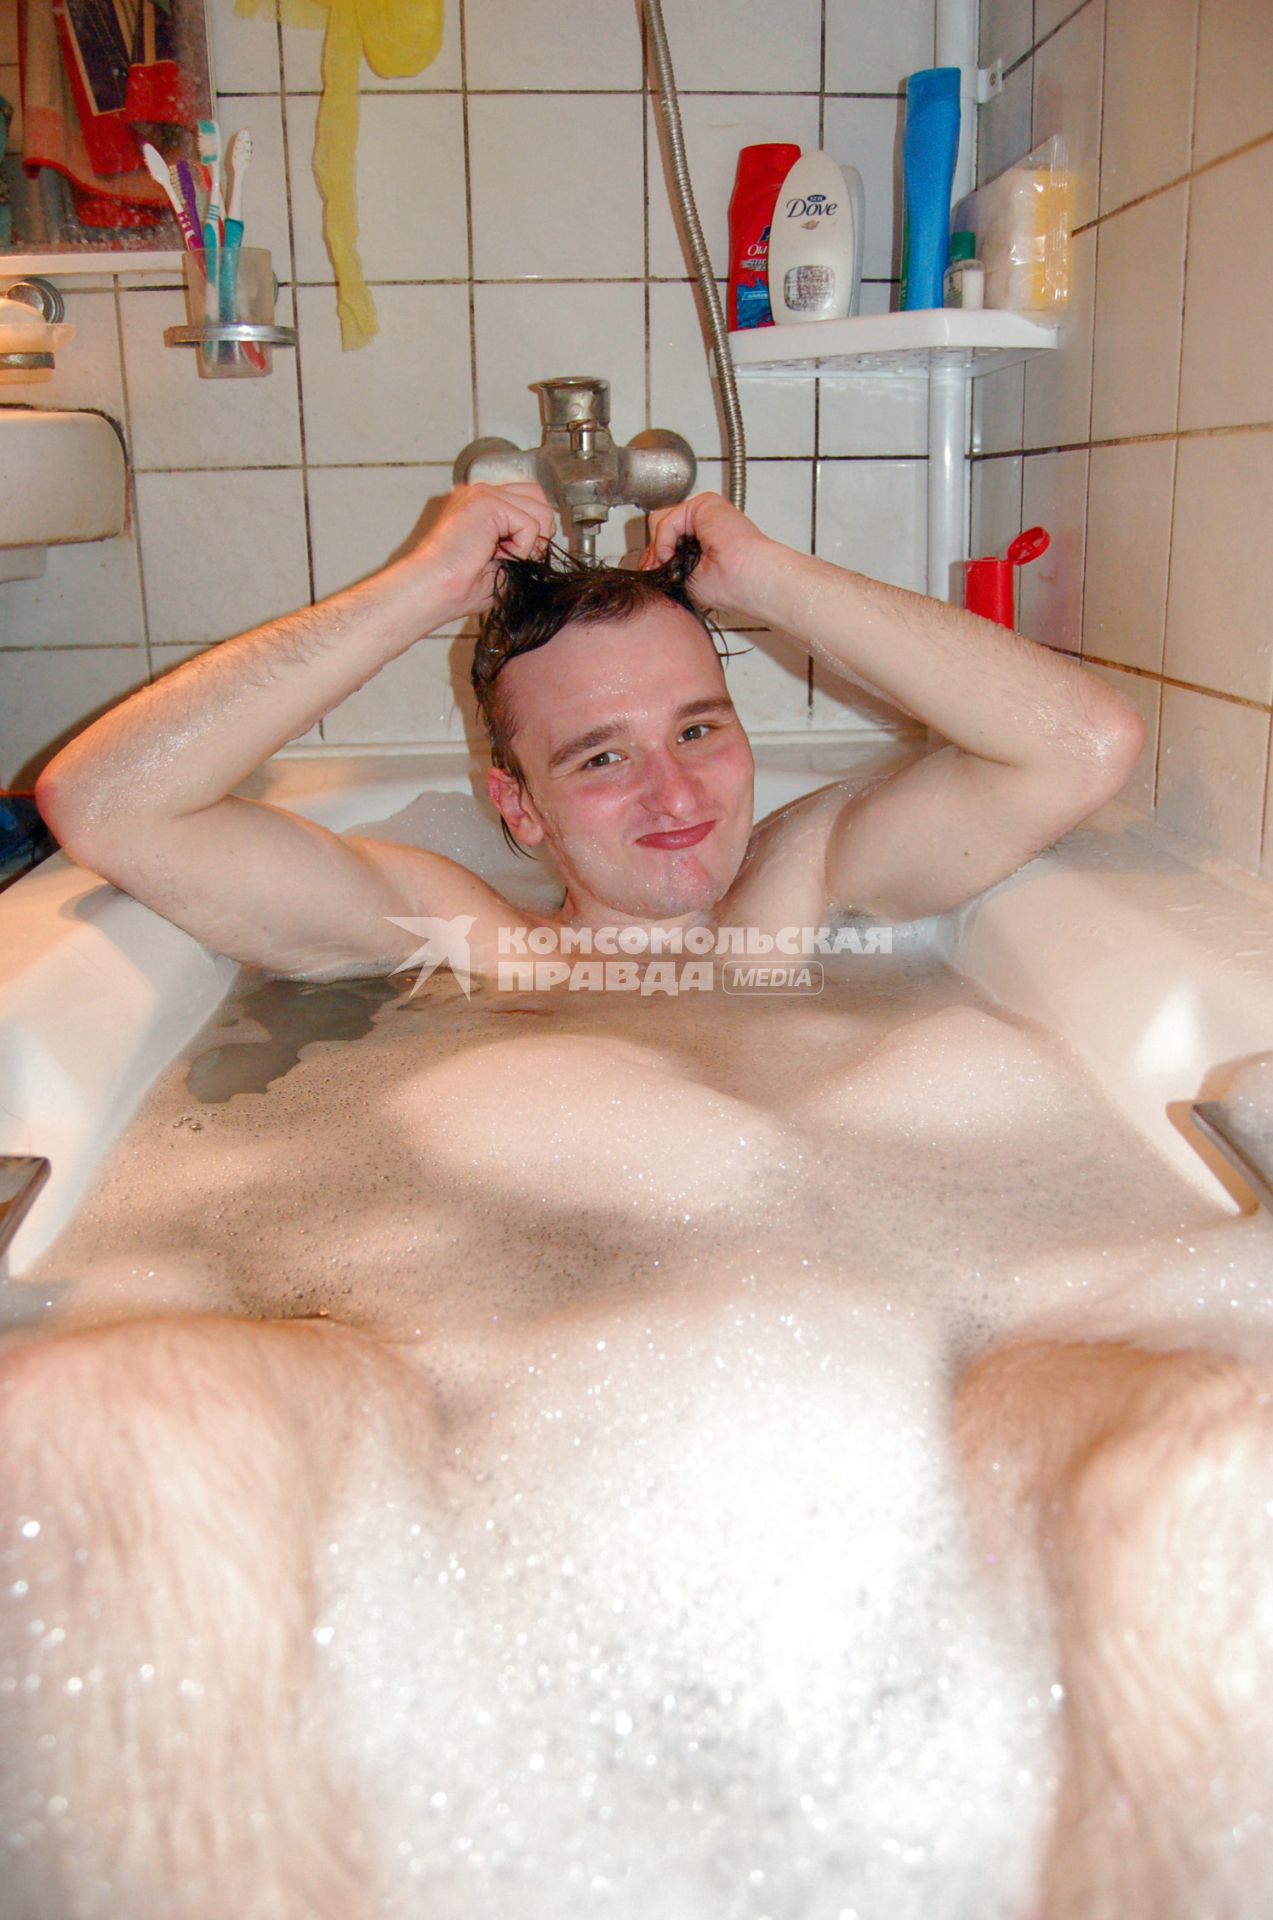 Парень, лежащий в ванне с пеной, моет голову.